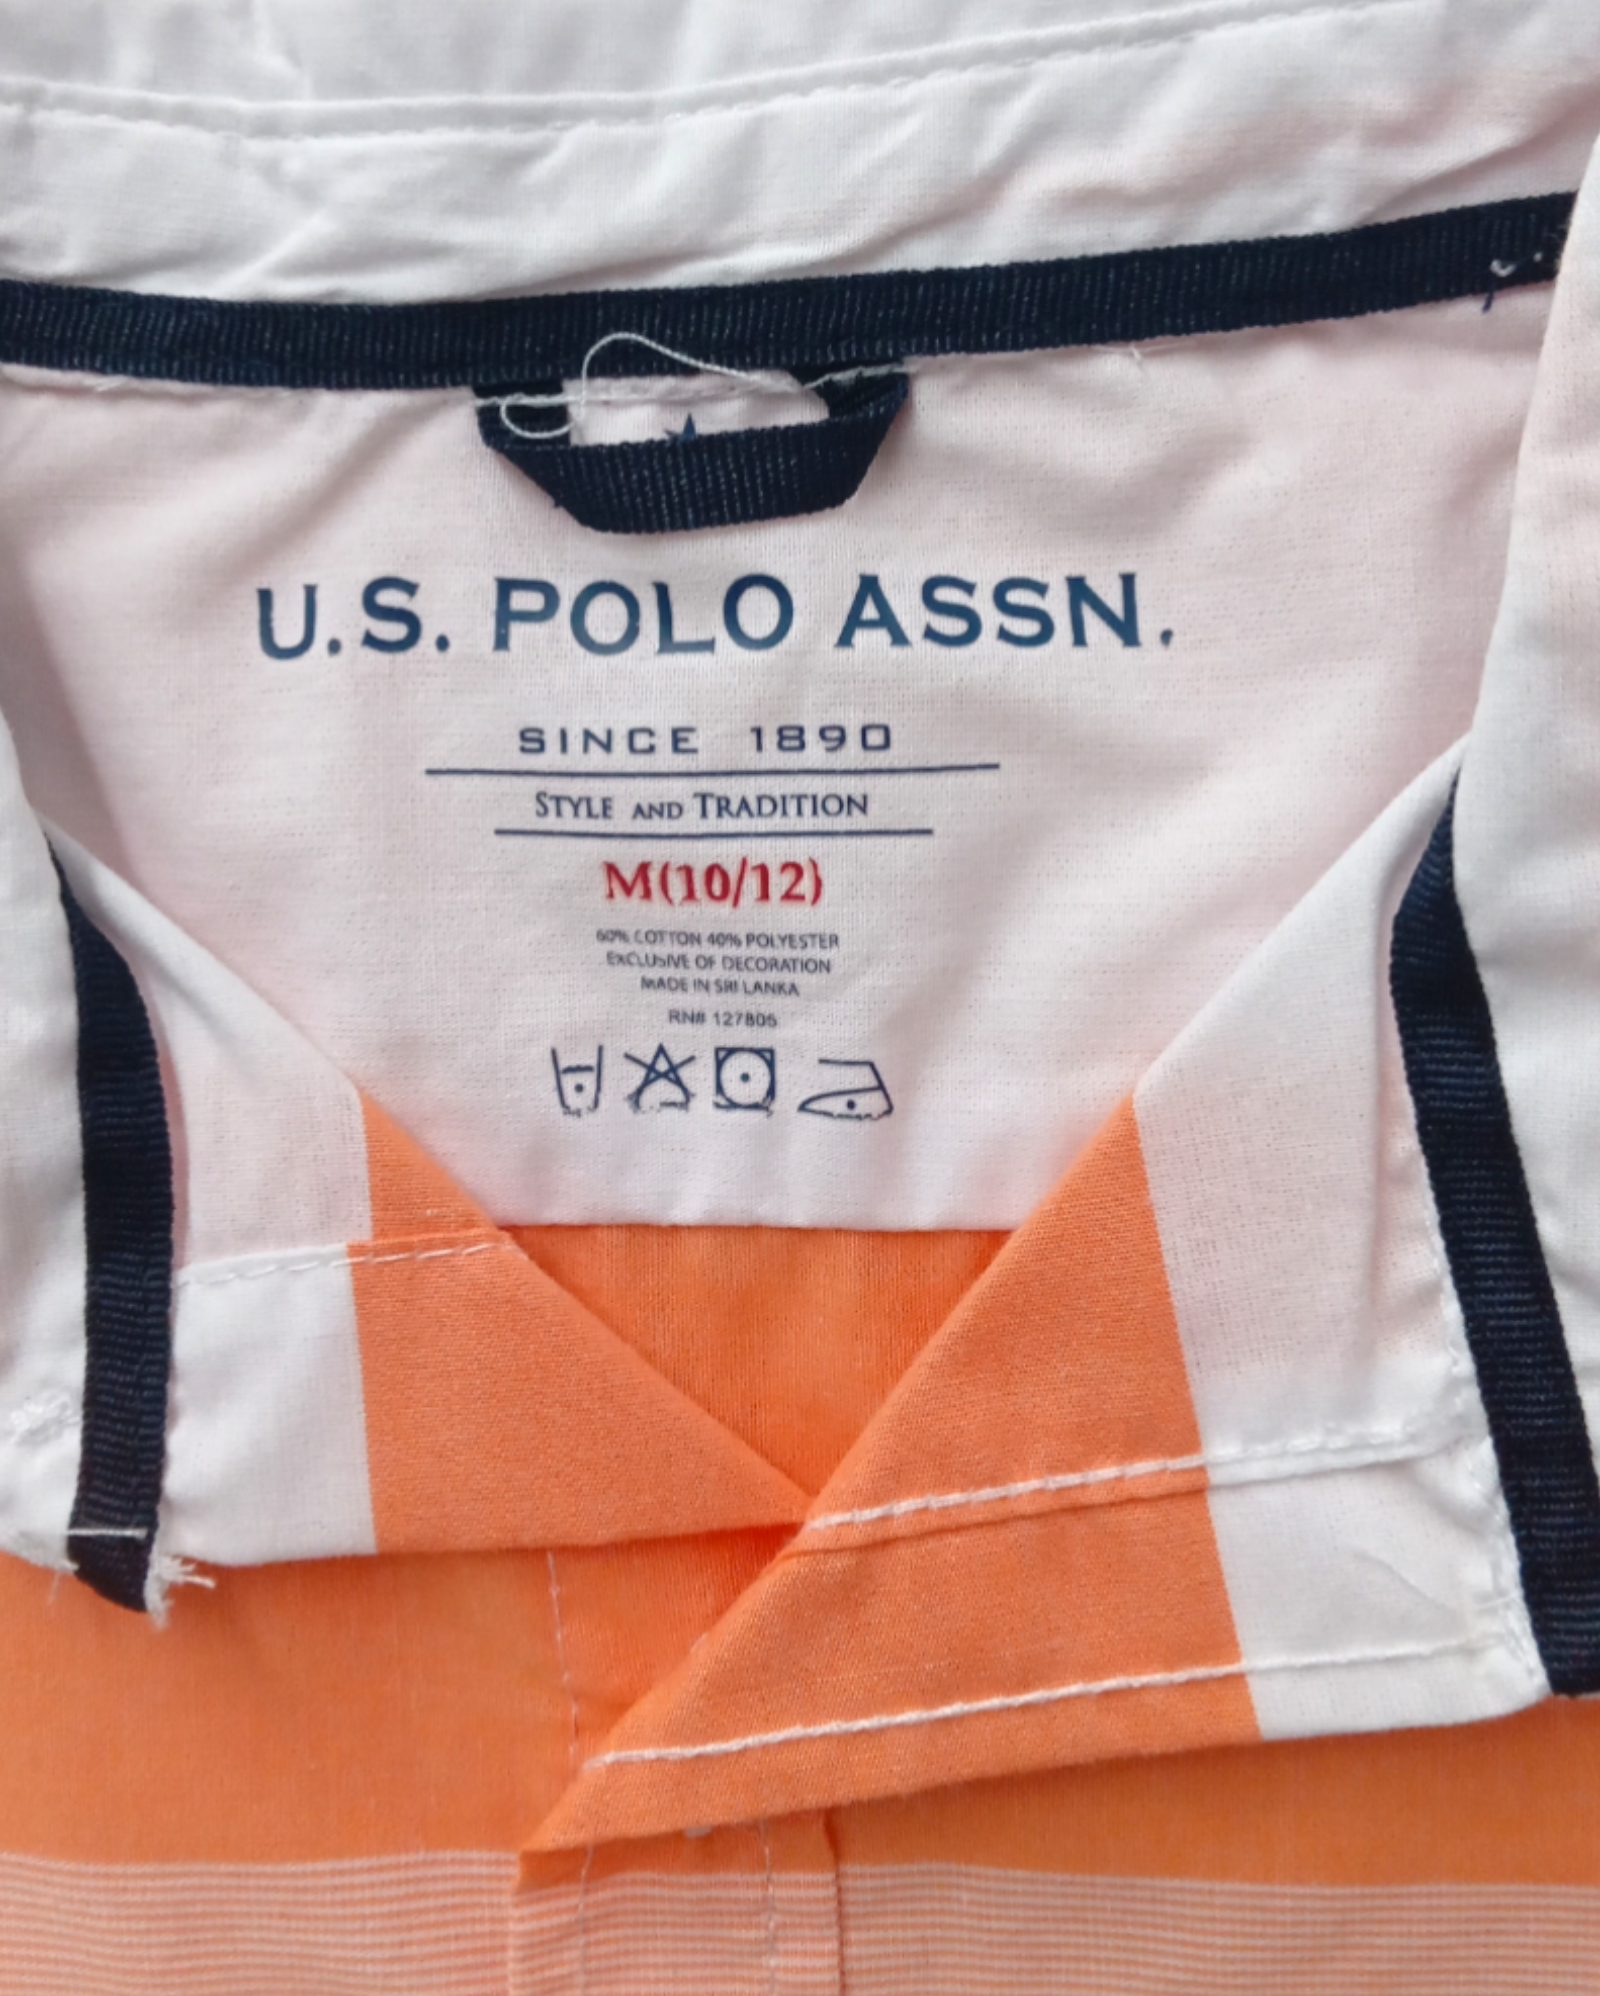 Ropa Niños Camisas Botones U.S Polo ASSN